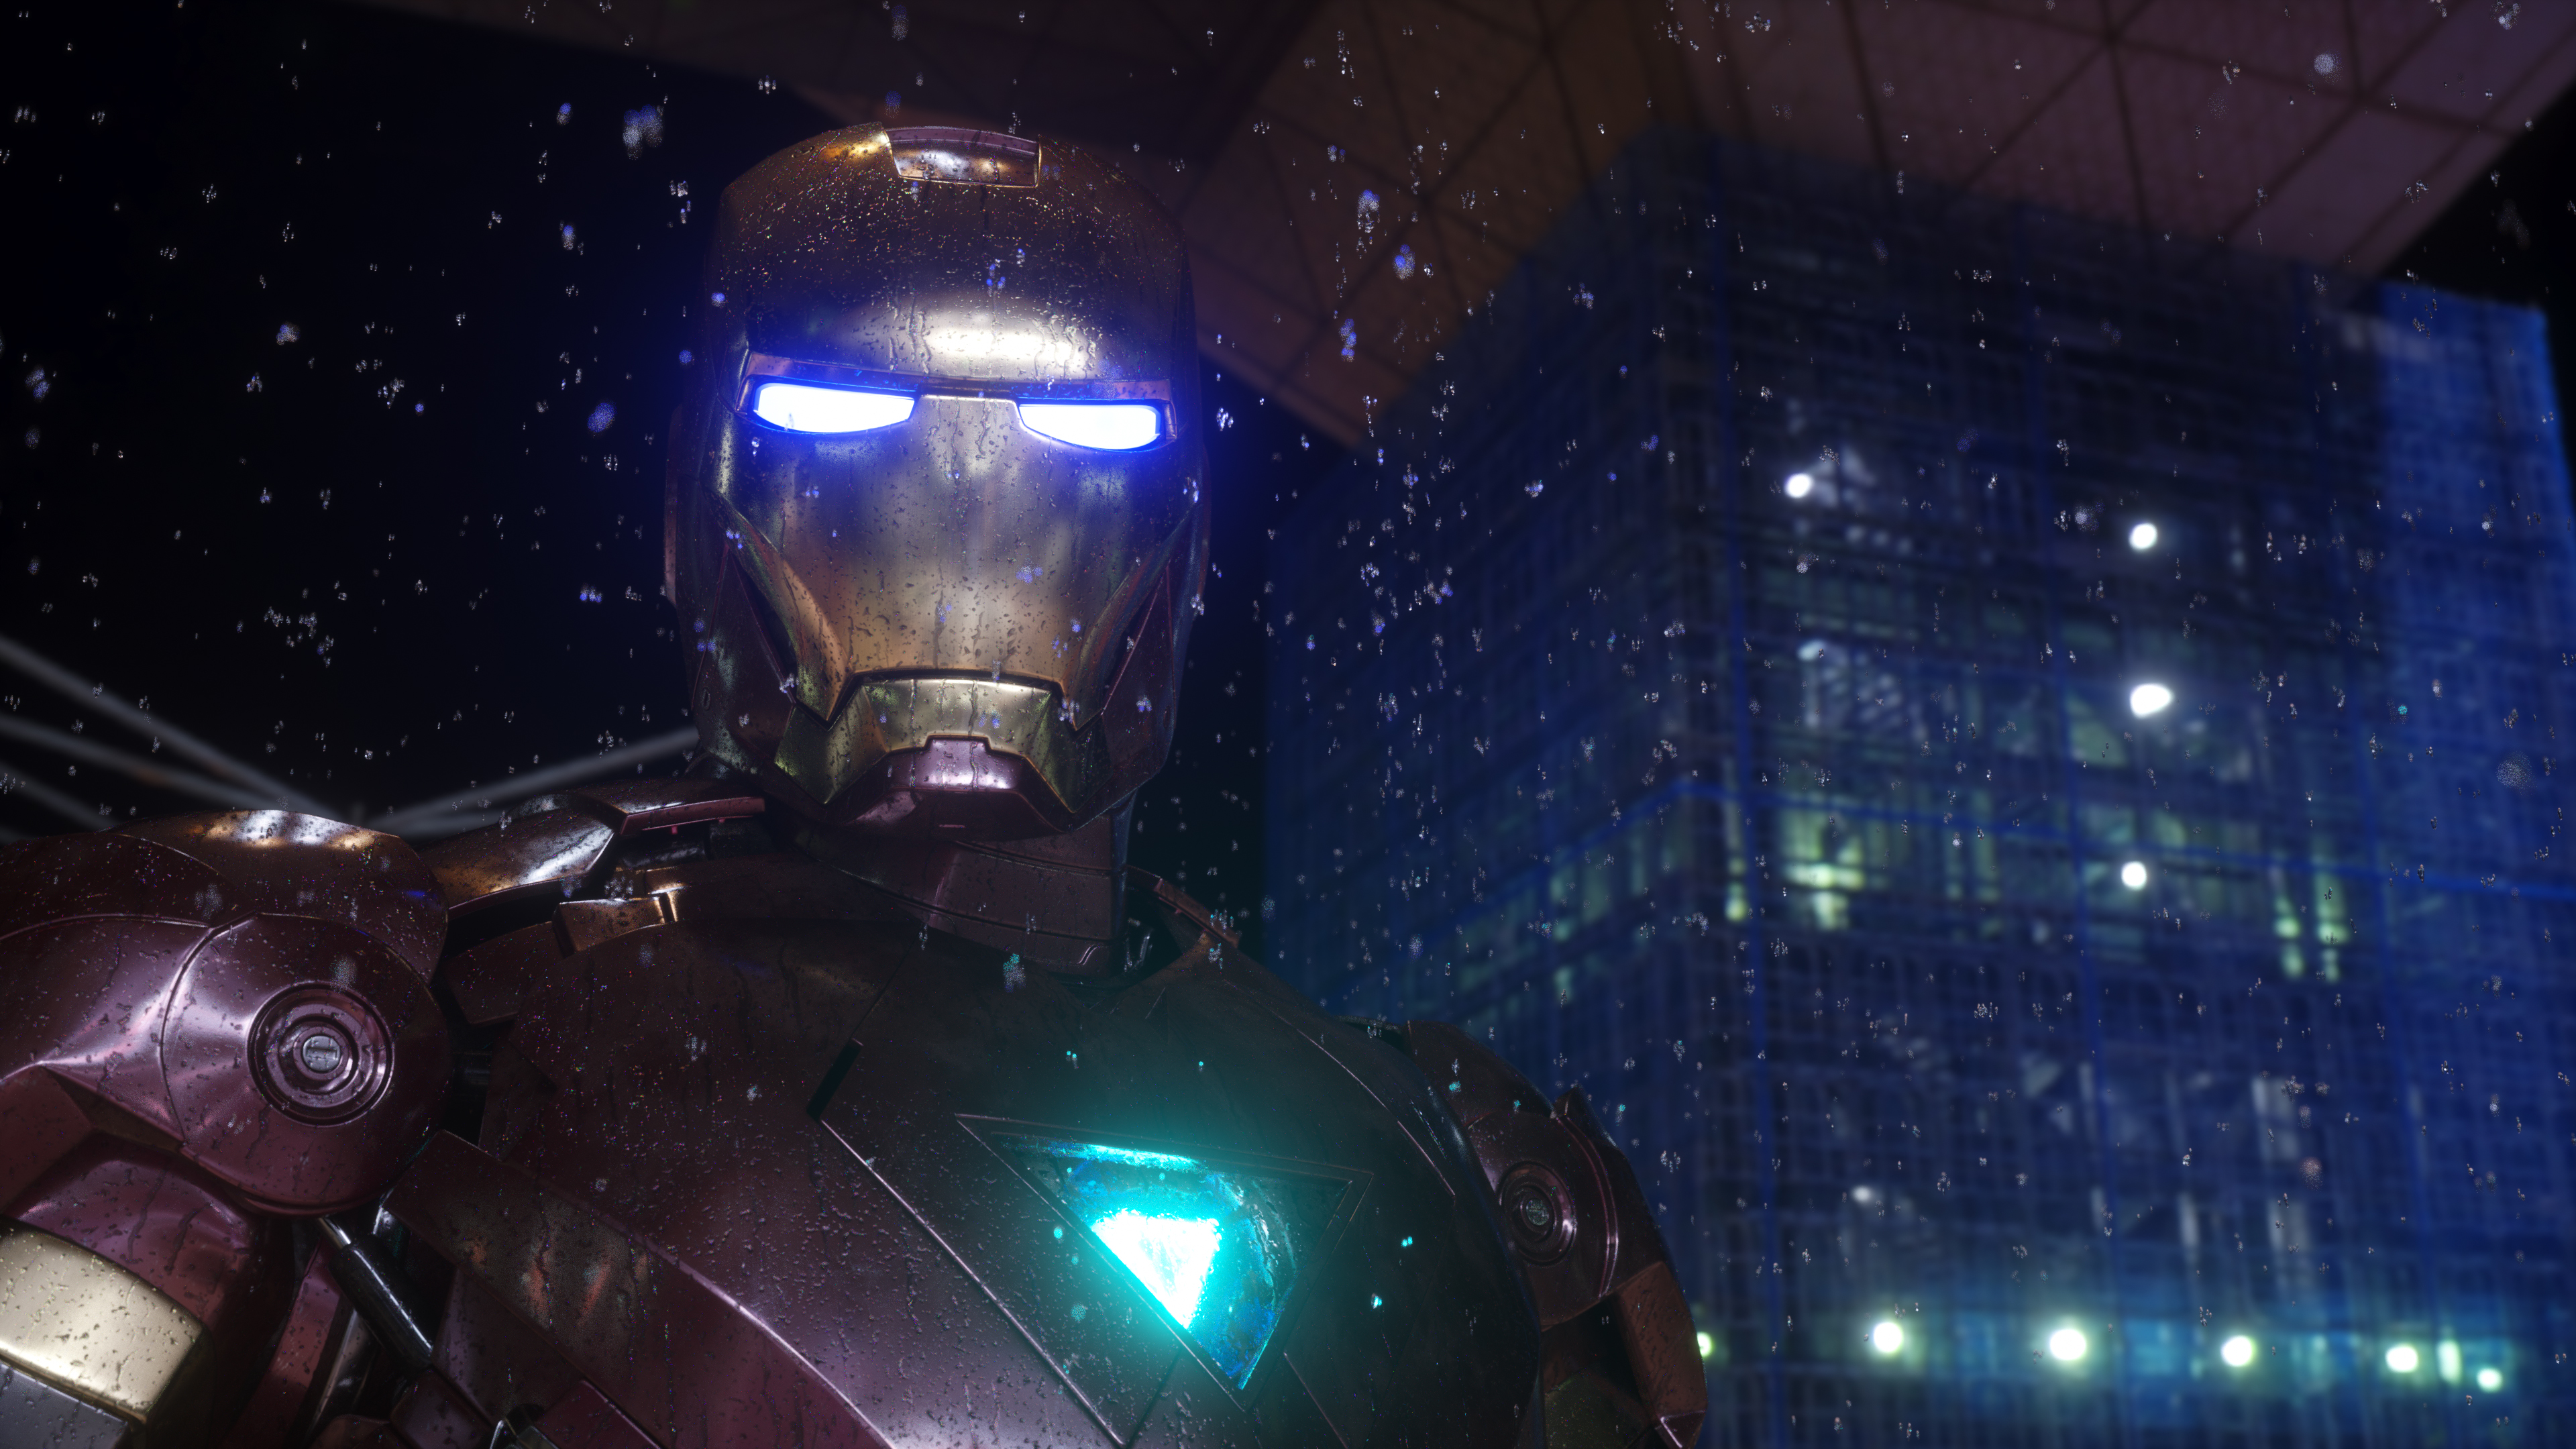 230+ 4K Iron Man Fondos de pantalla | Fondos de Escritorio